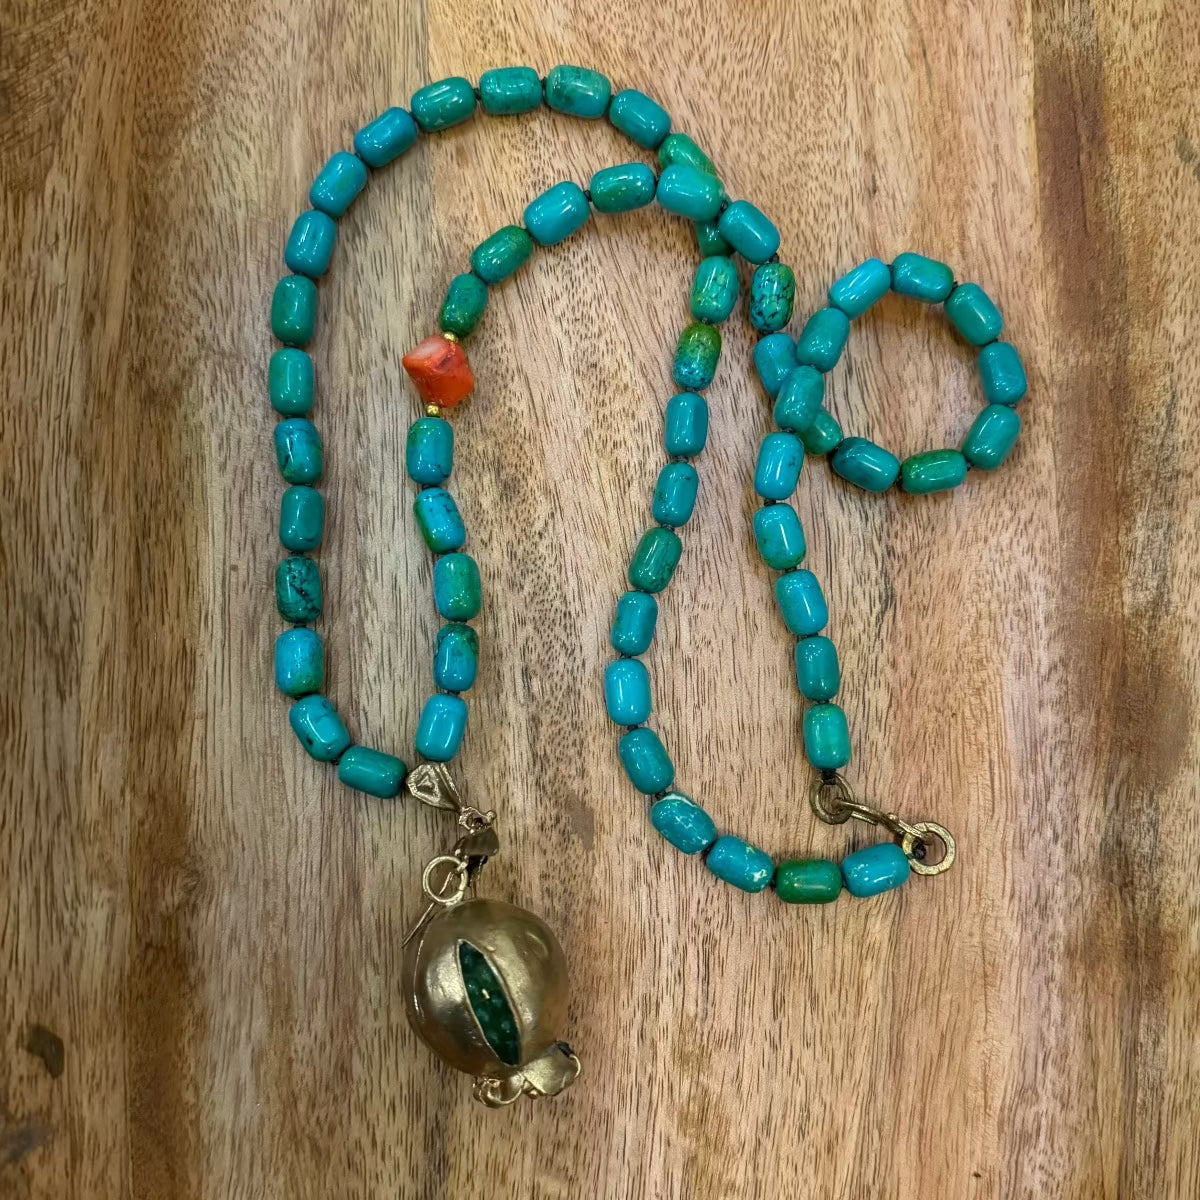 Turquoise Beaded Necklace with Pomegranate Pendant Necklace Eyup Gunduz 